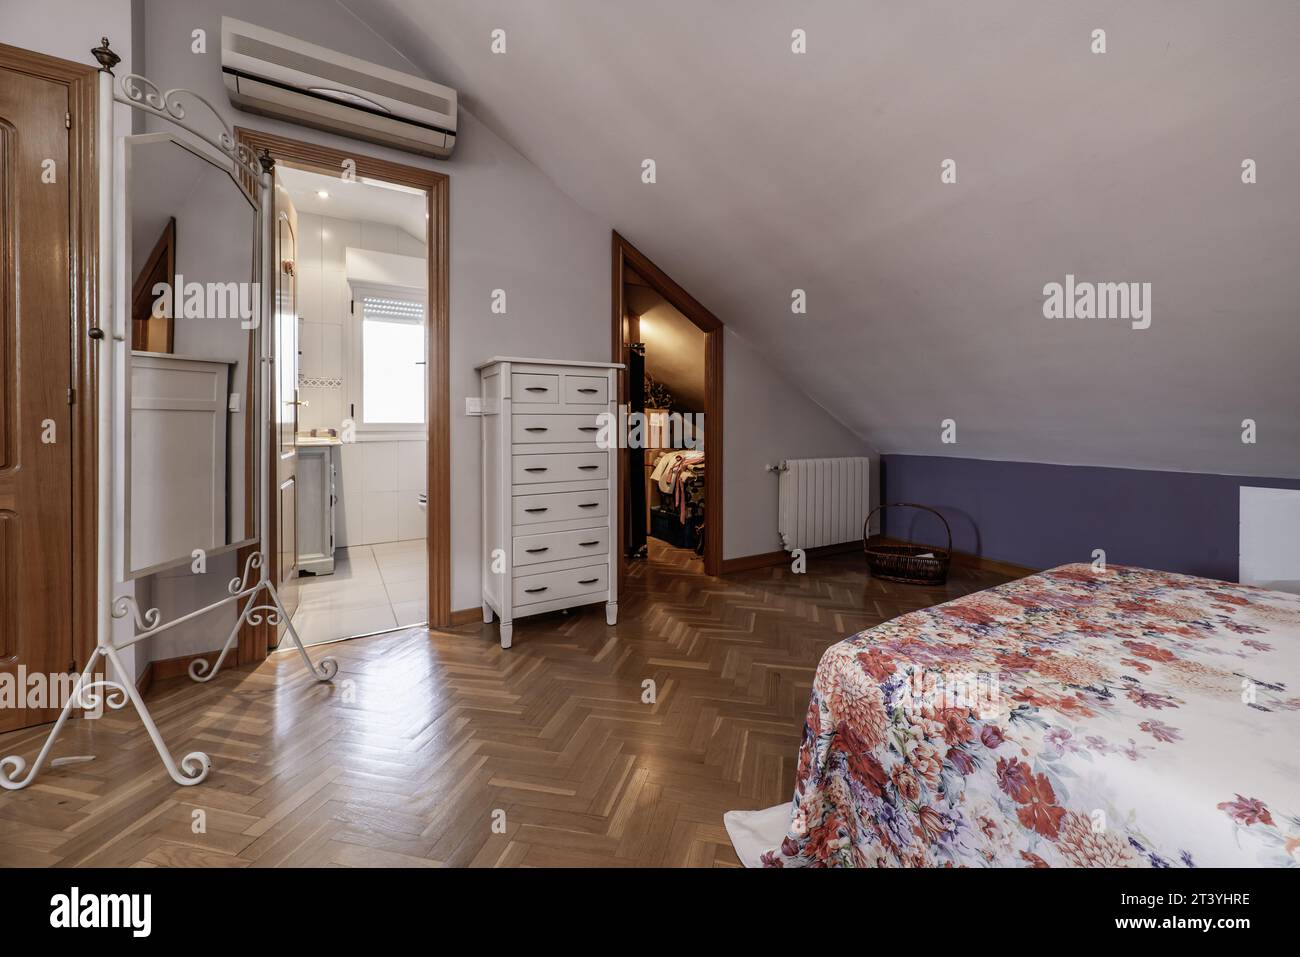 Attic floor bedroom with sloping ceilings, en-suite bathroom Stock Photo